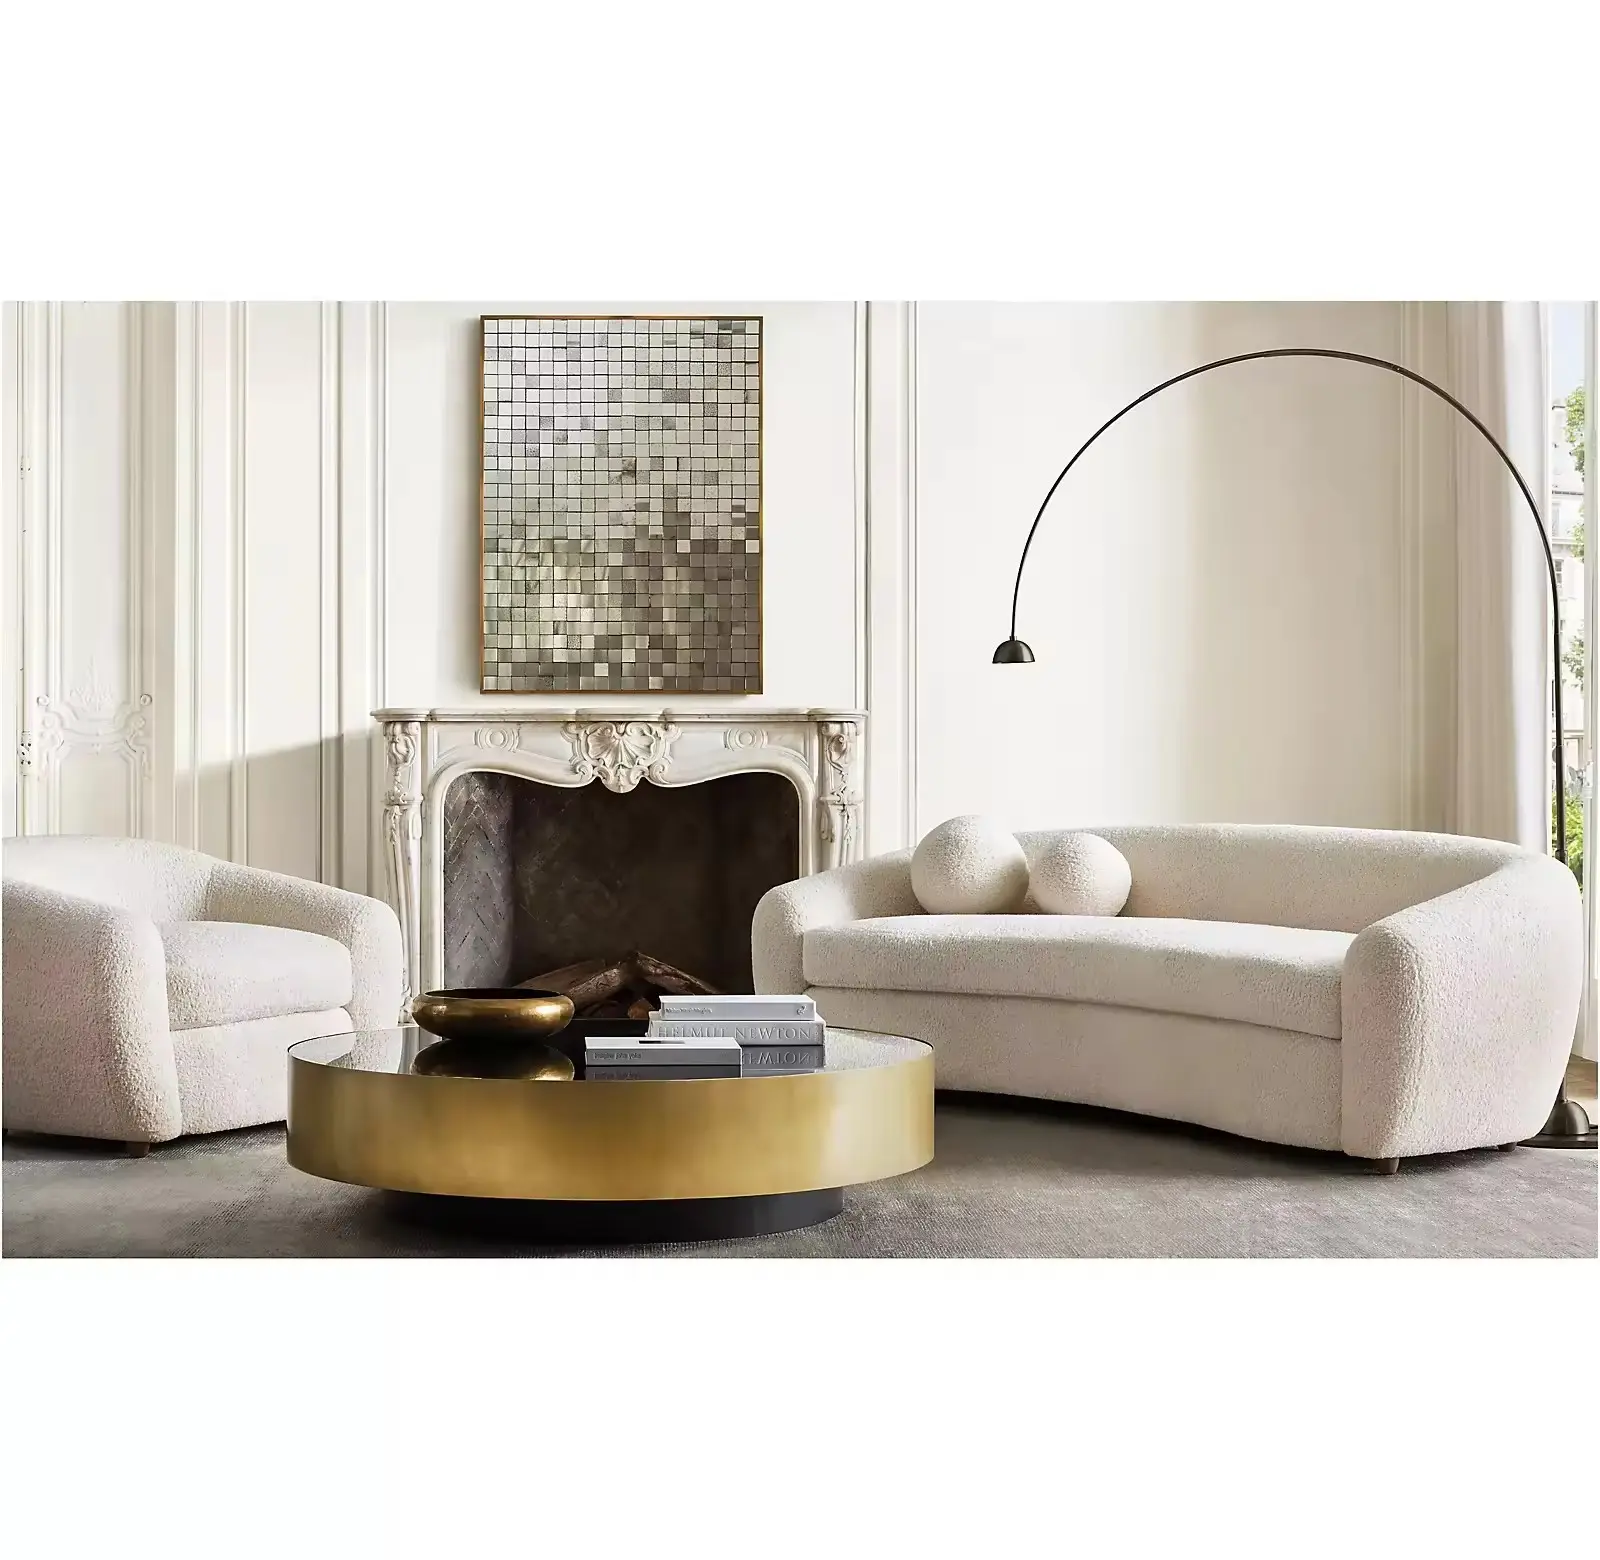 Sofa putih kualitas tinggi, Sofa mewah, interior rumah, ruang tamu, furnitur